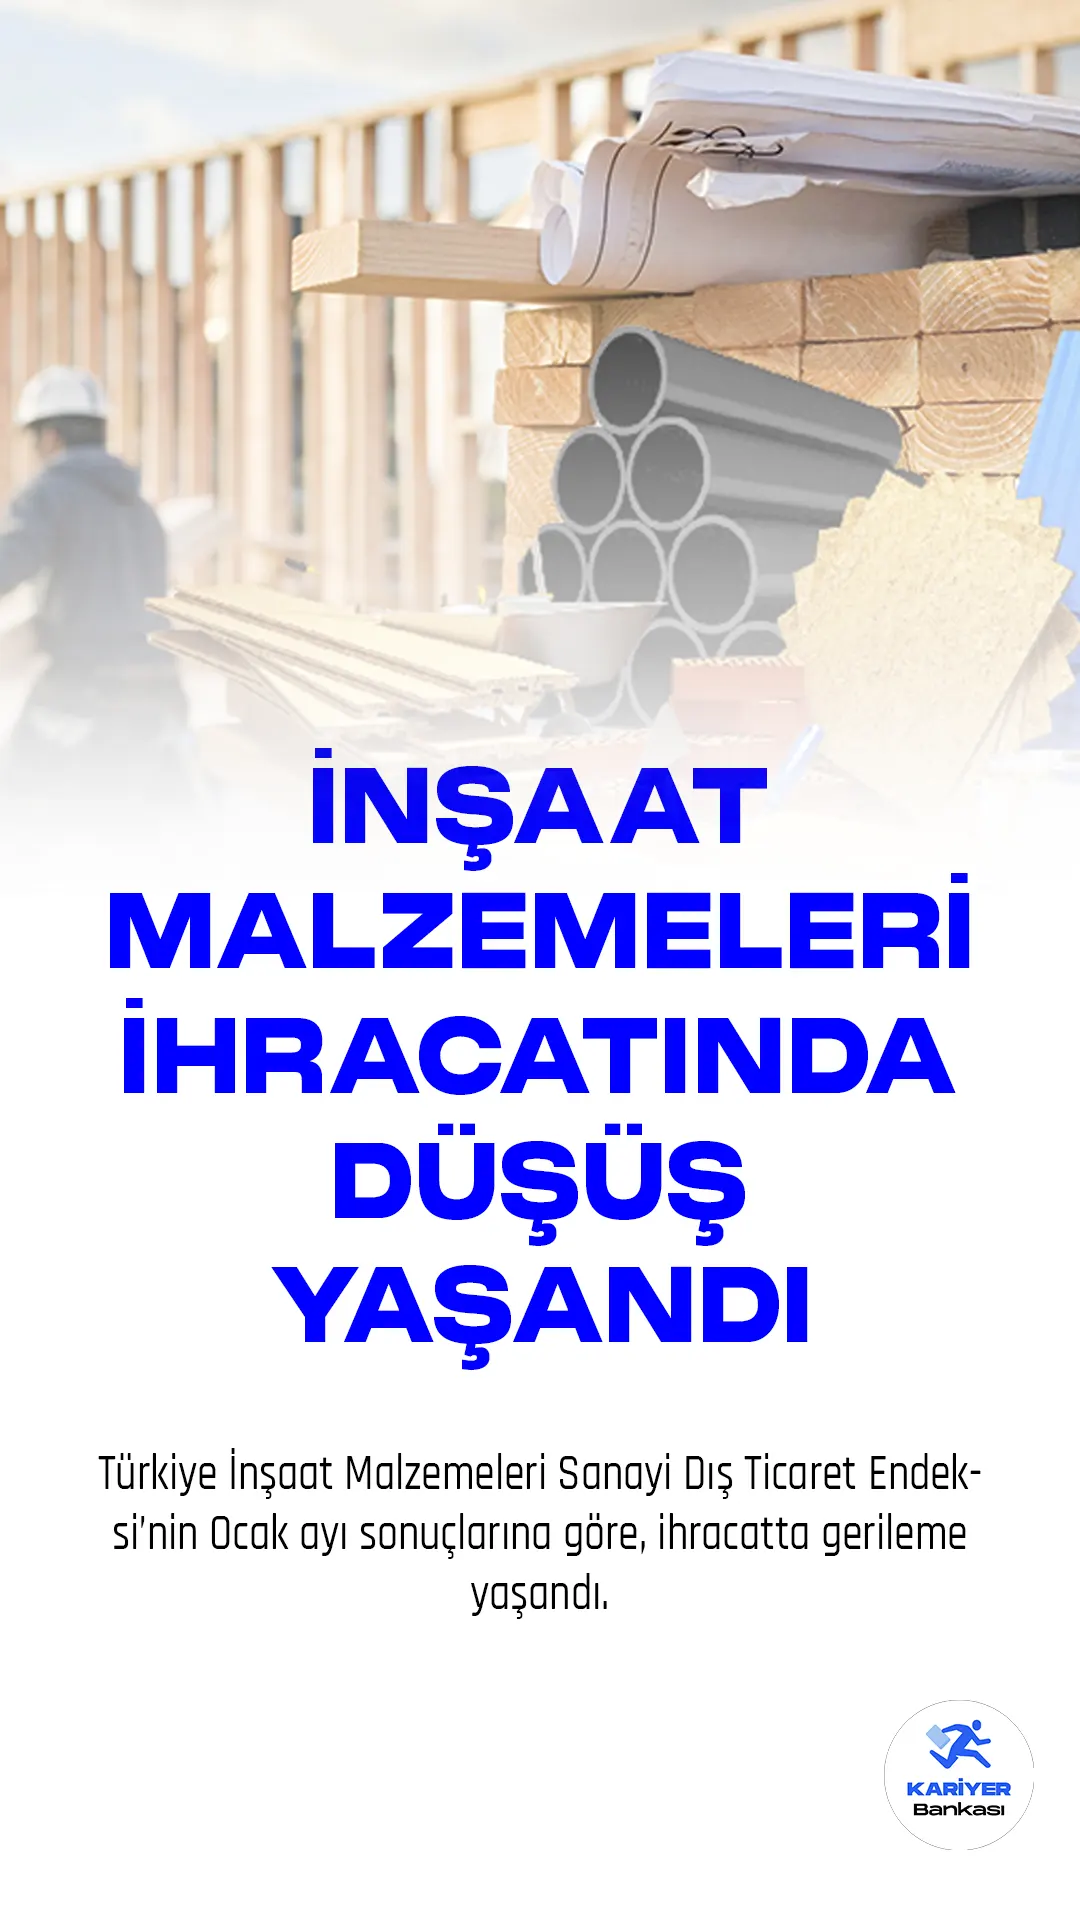 Türkiye İnşaat Malzemeleri Sanayi Dış Ticaret Endeksi’nin Ocak ayı sonuçlarına göre, ihracatta gerileme yaşandı.